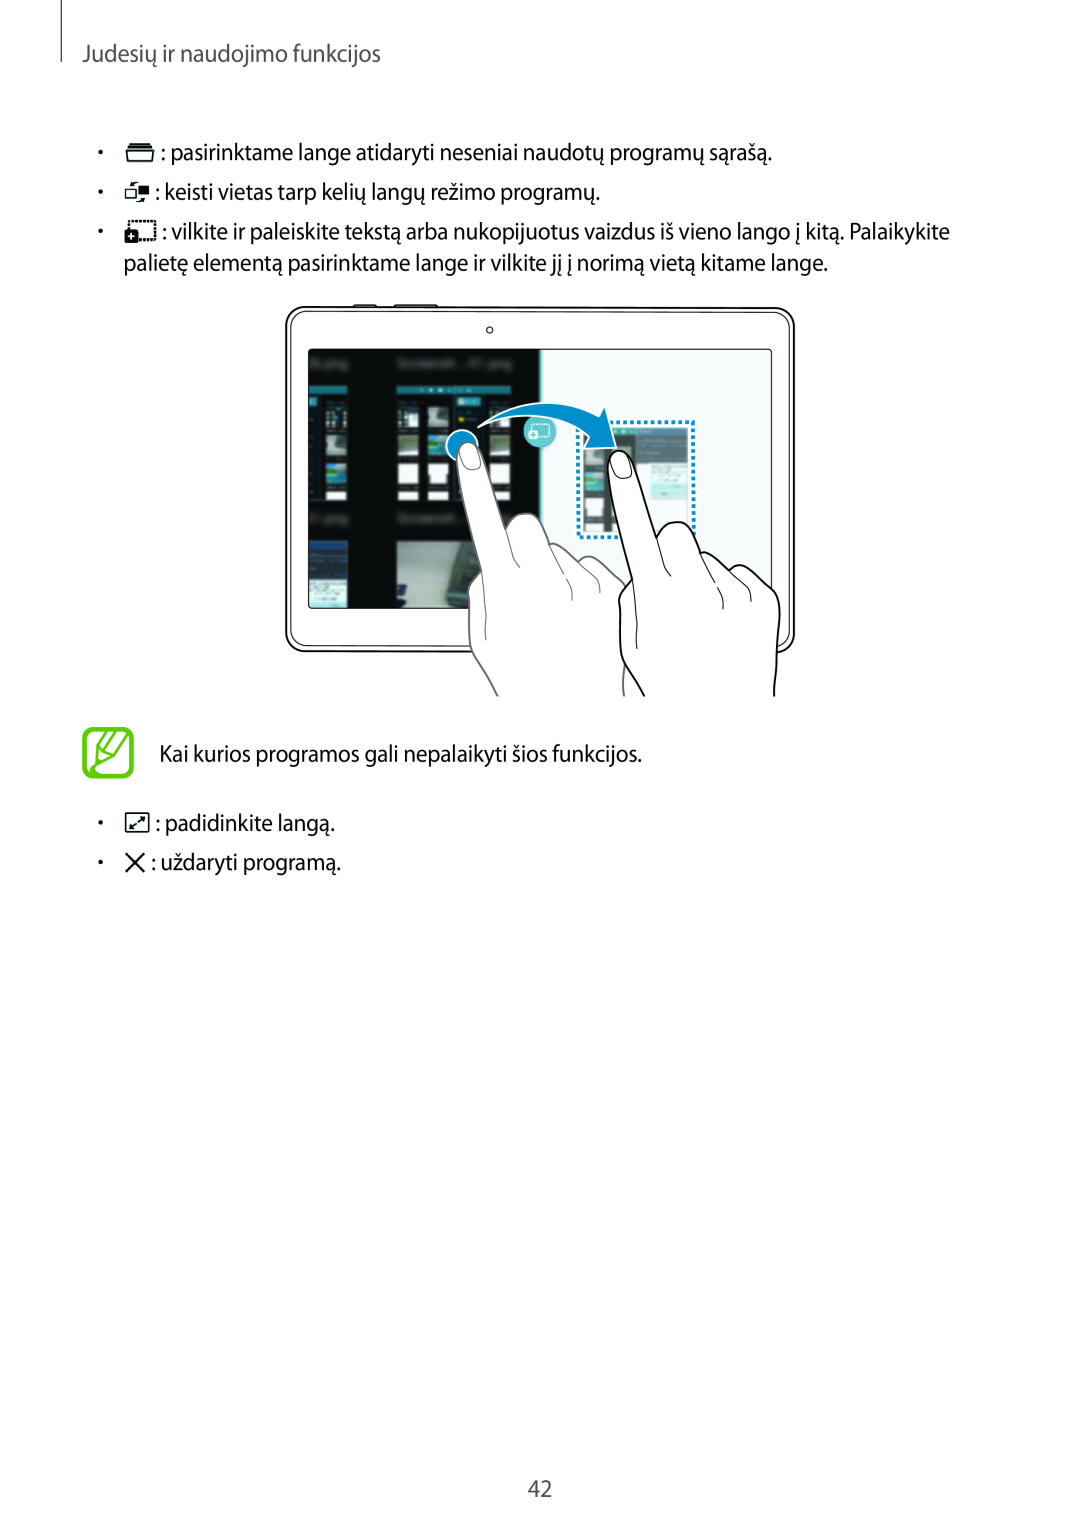 Samsung SM-T800NTSASEB manual Judesių ir naudojimo funkcijos, pasirinktame lange atidaryti neseniai naudotų programų sąrašą 